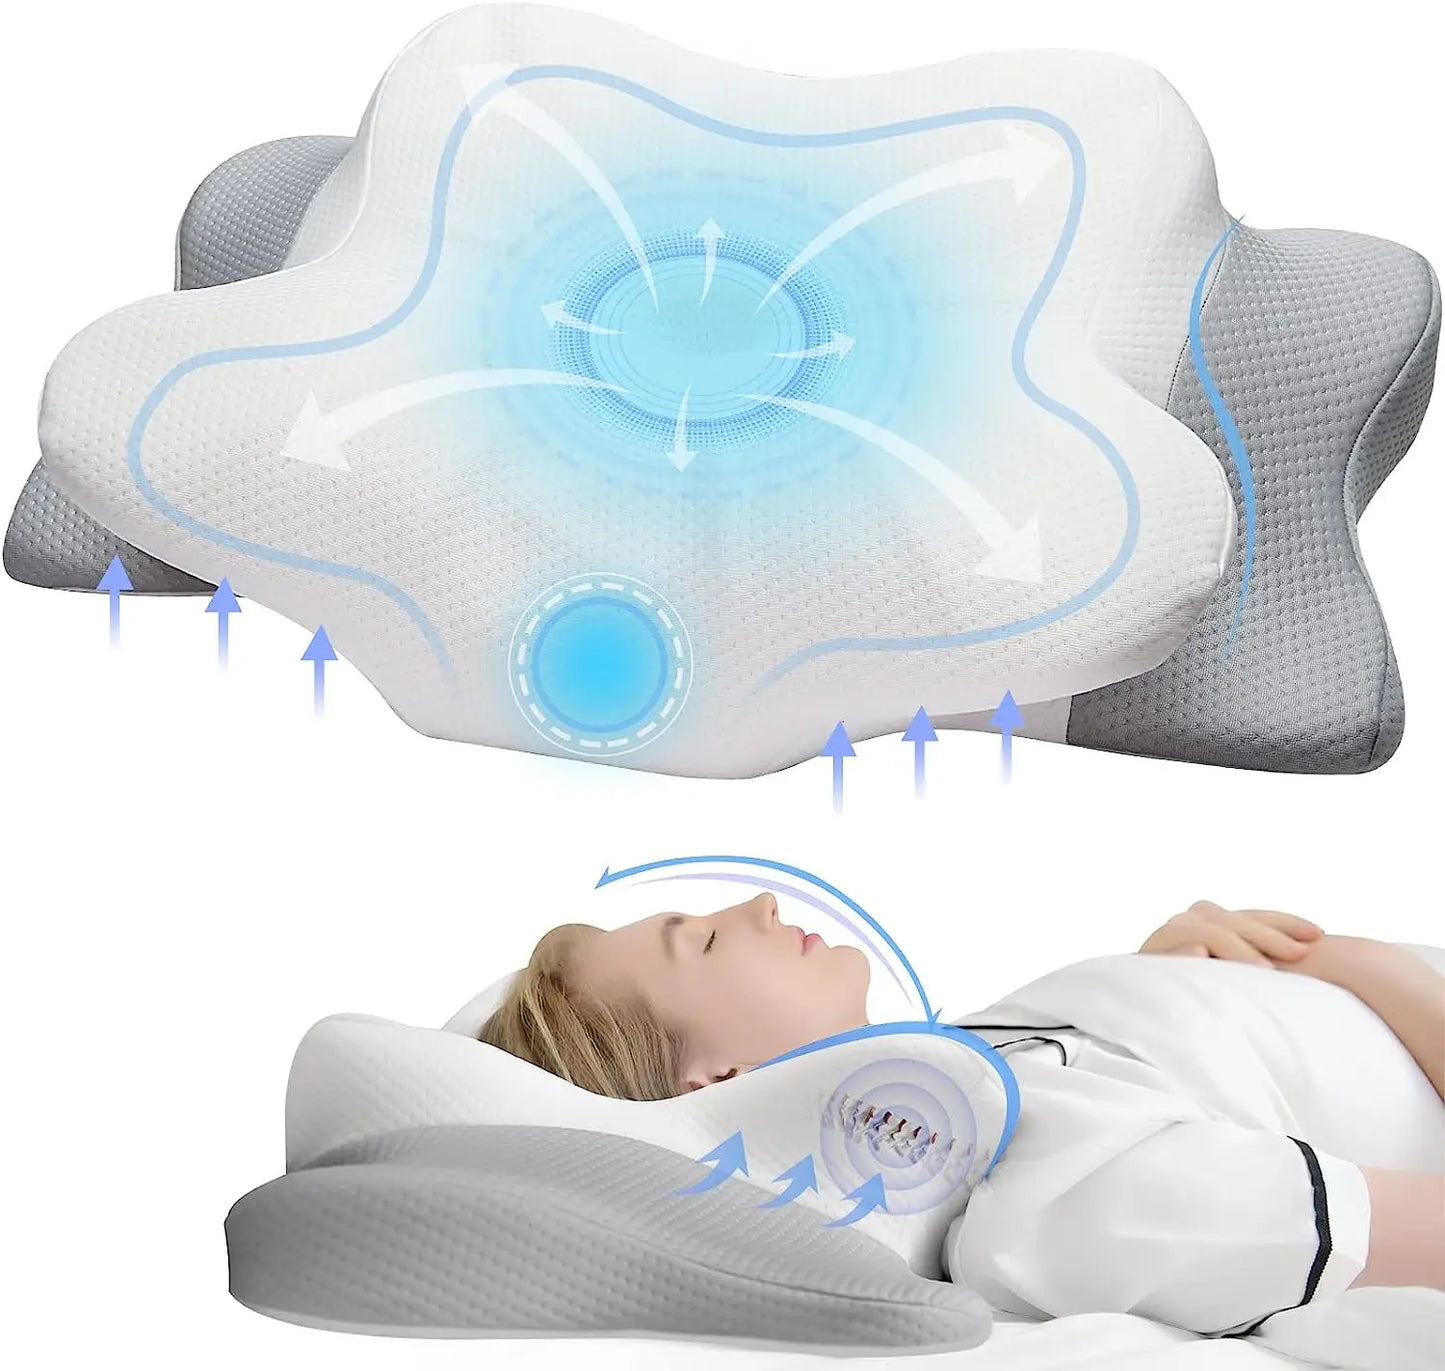 NovaRest - Memory Foam Orthopedic Cervical Pillow for Neck and Shoulders